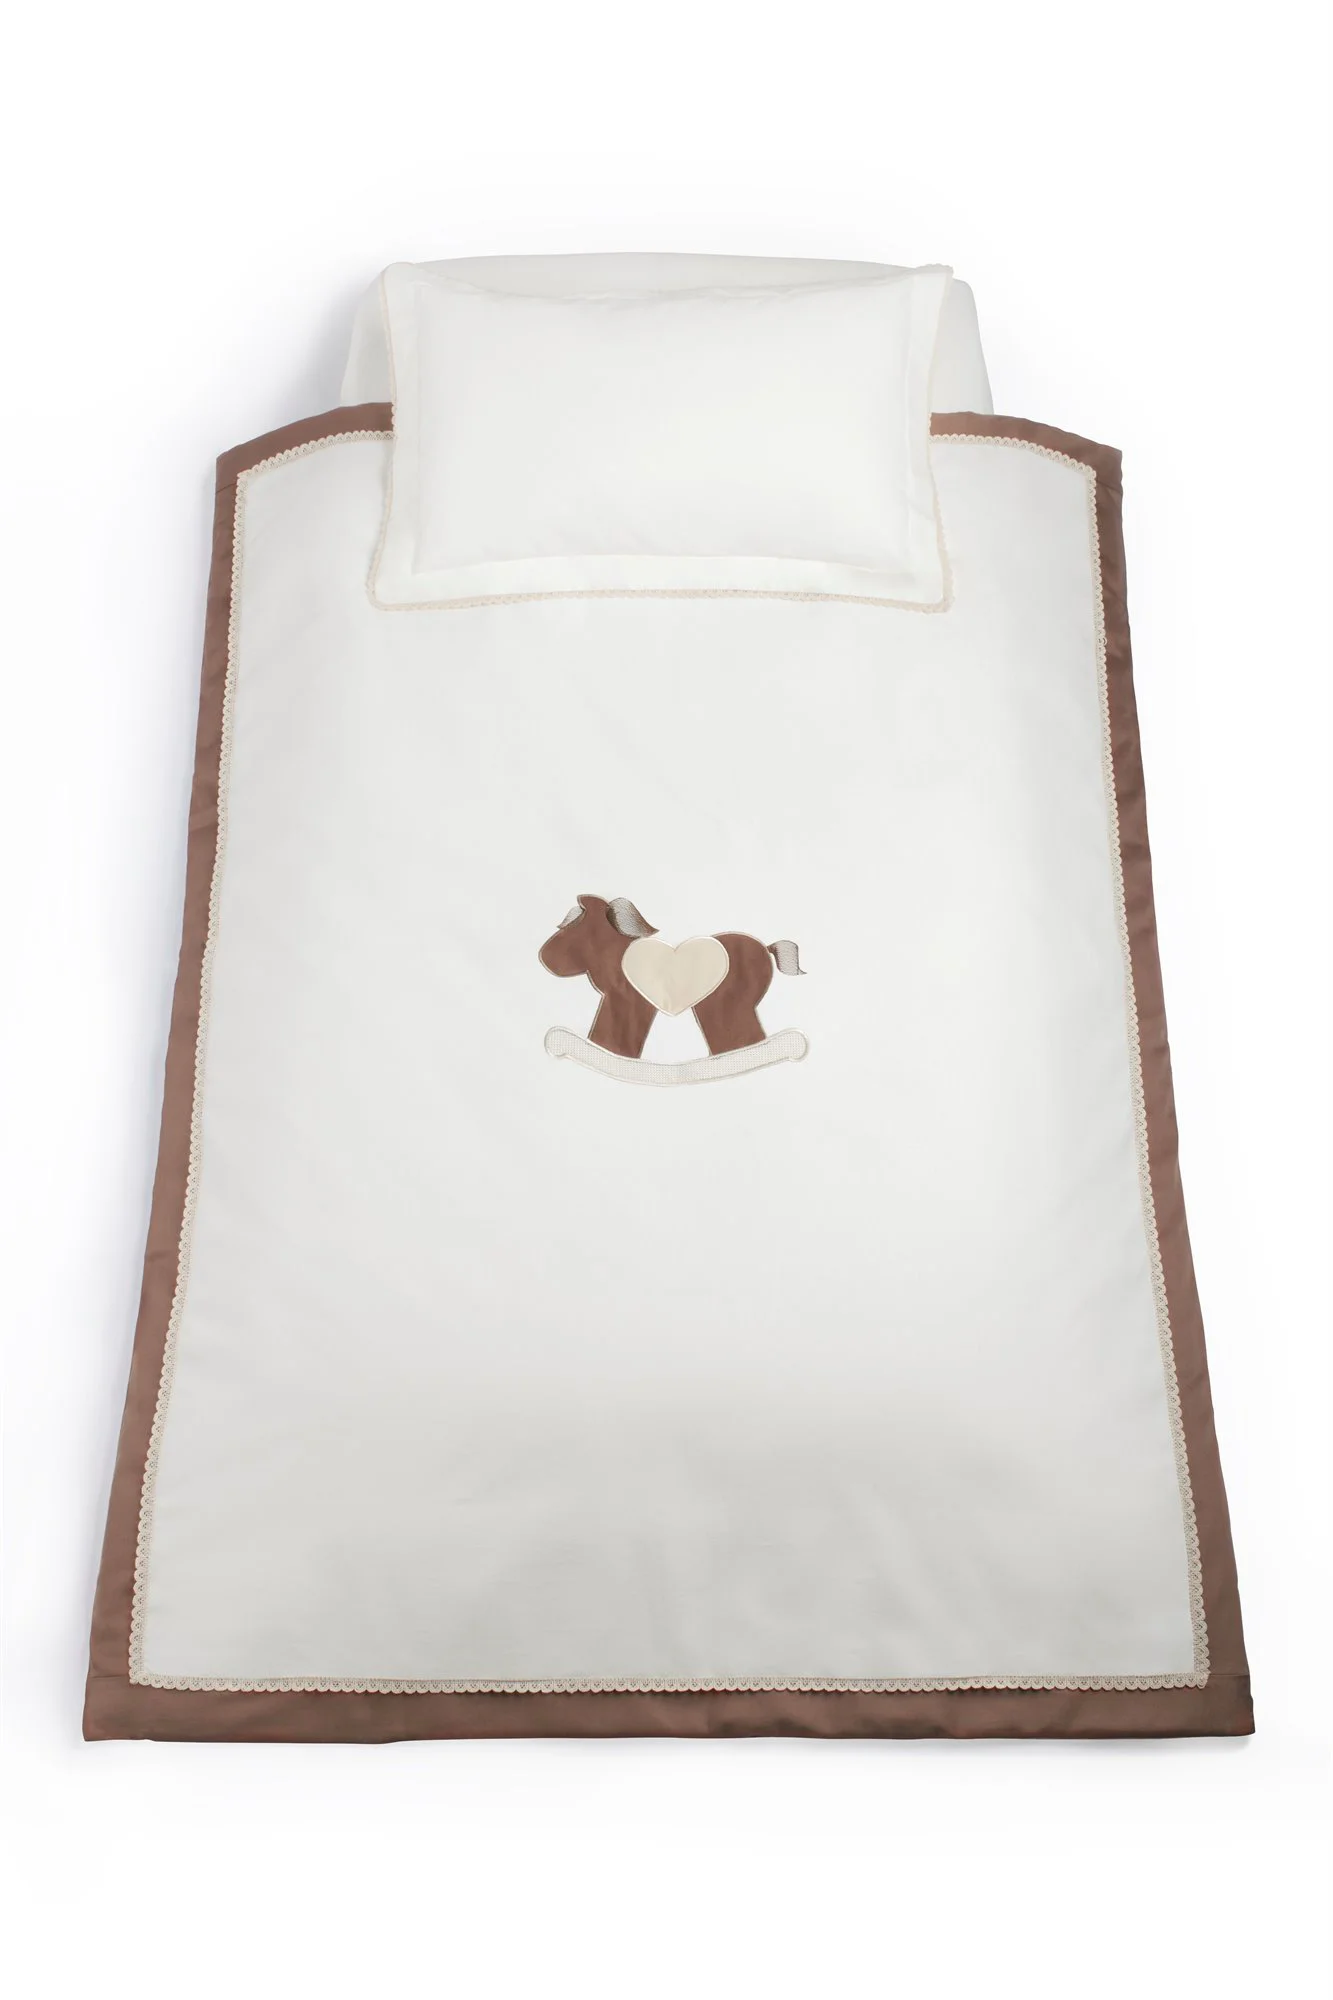 Комплект постельного белья Specialbaby Gigi бежевый из 3 предметов (Для кровати 120 * 60 см)